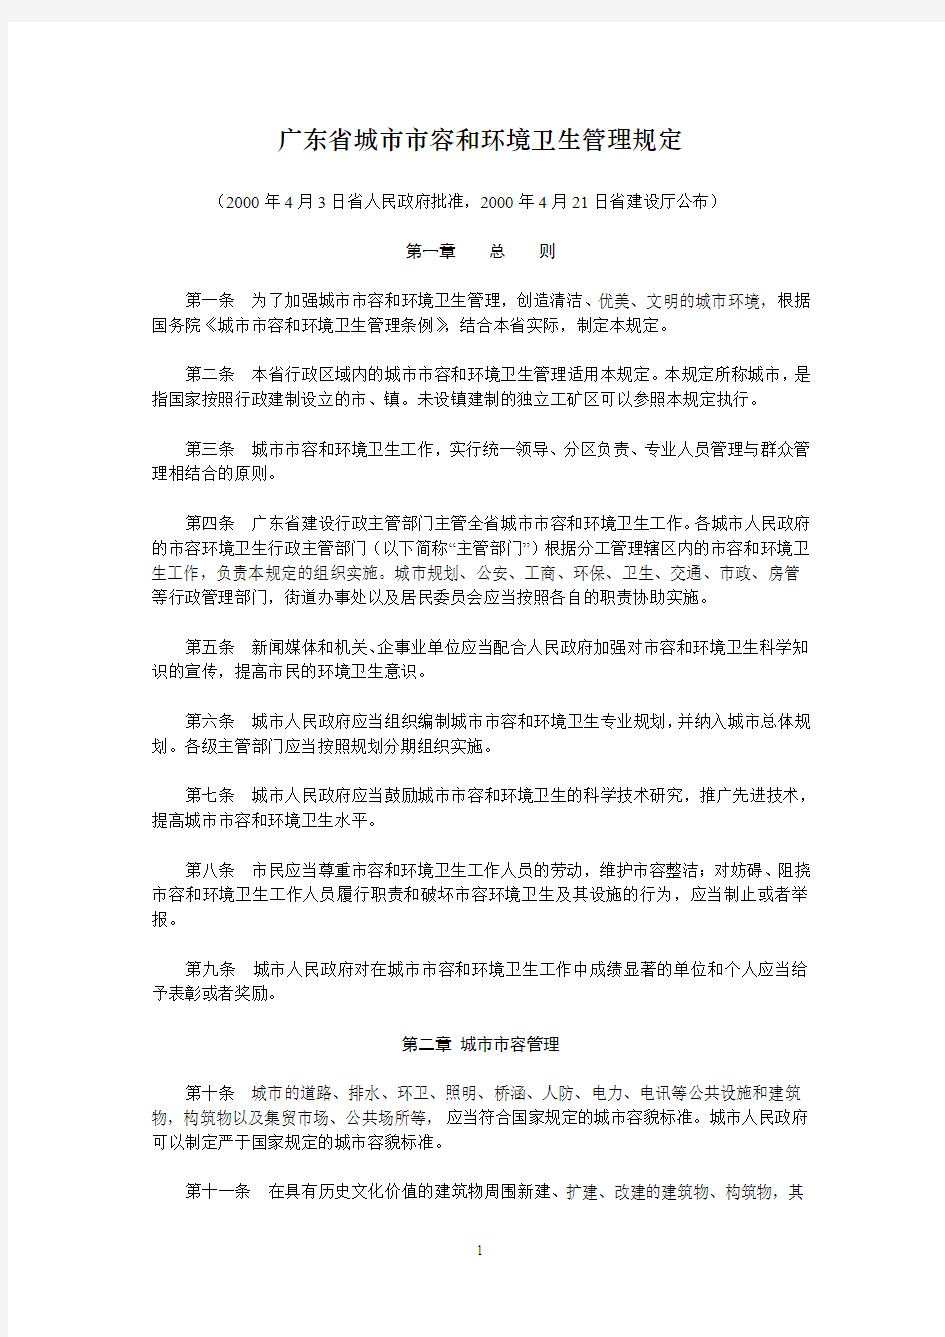 广东省城市市容和环境卫生管理规定